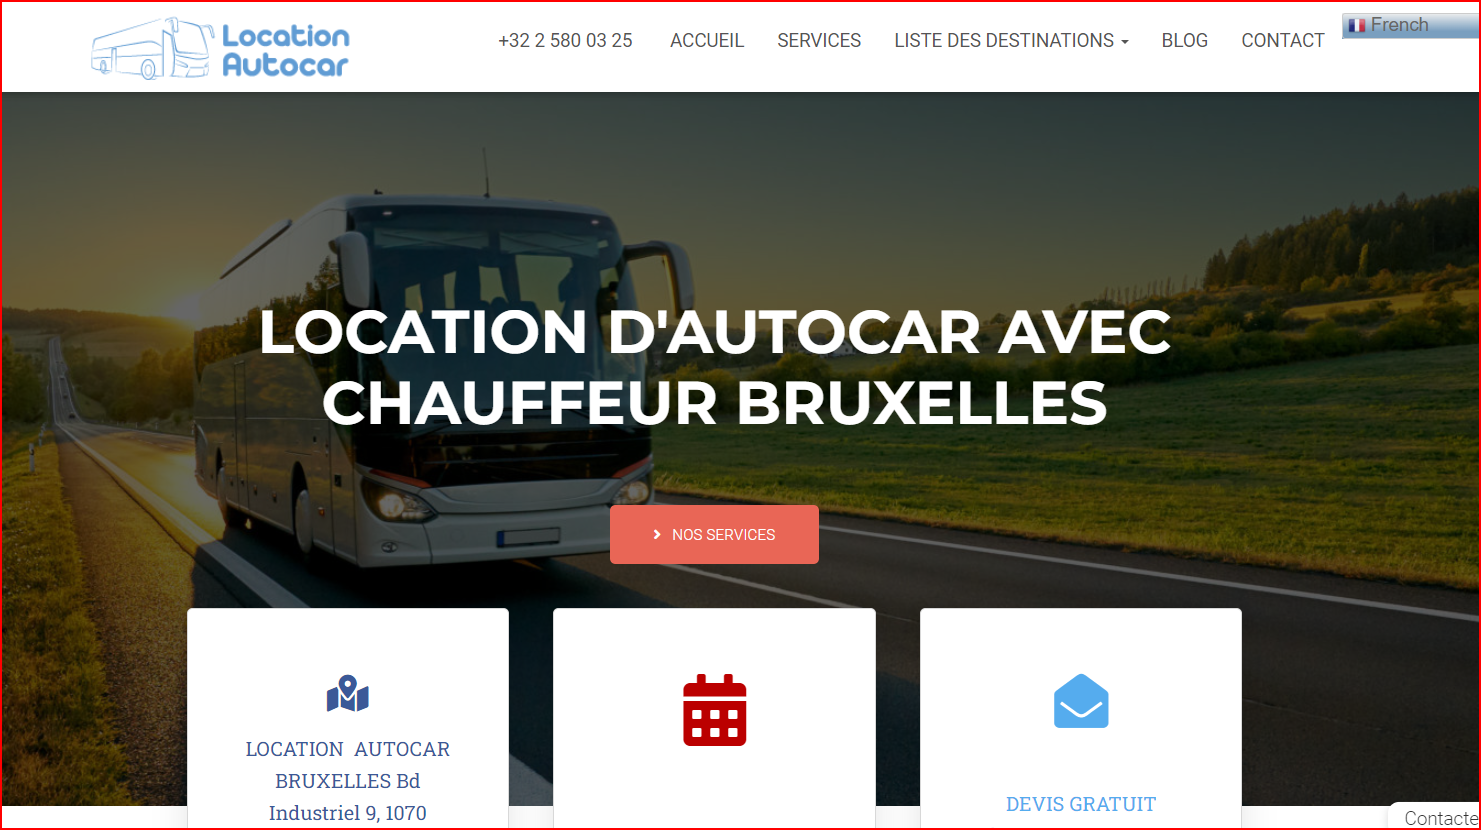 LOCATION D'AUTOCAR AVEC CHAUFFEUR BRUXELLES